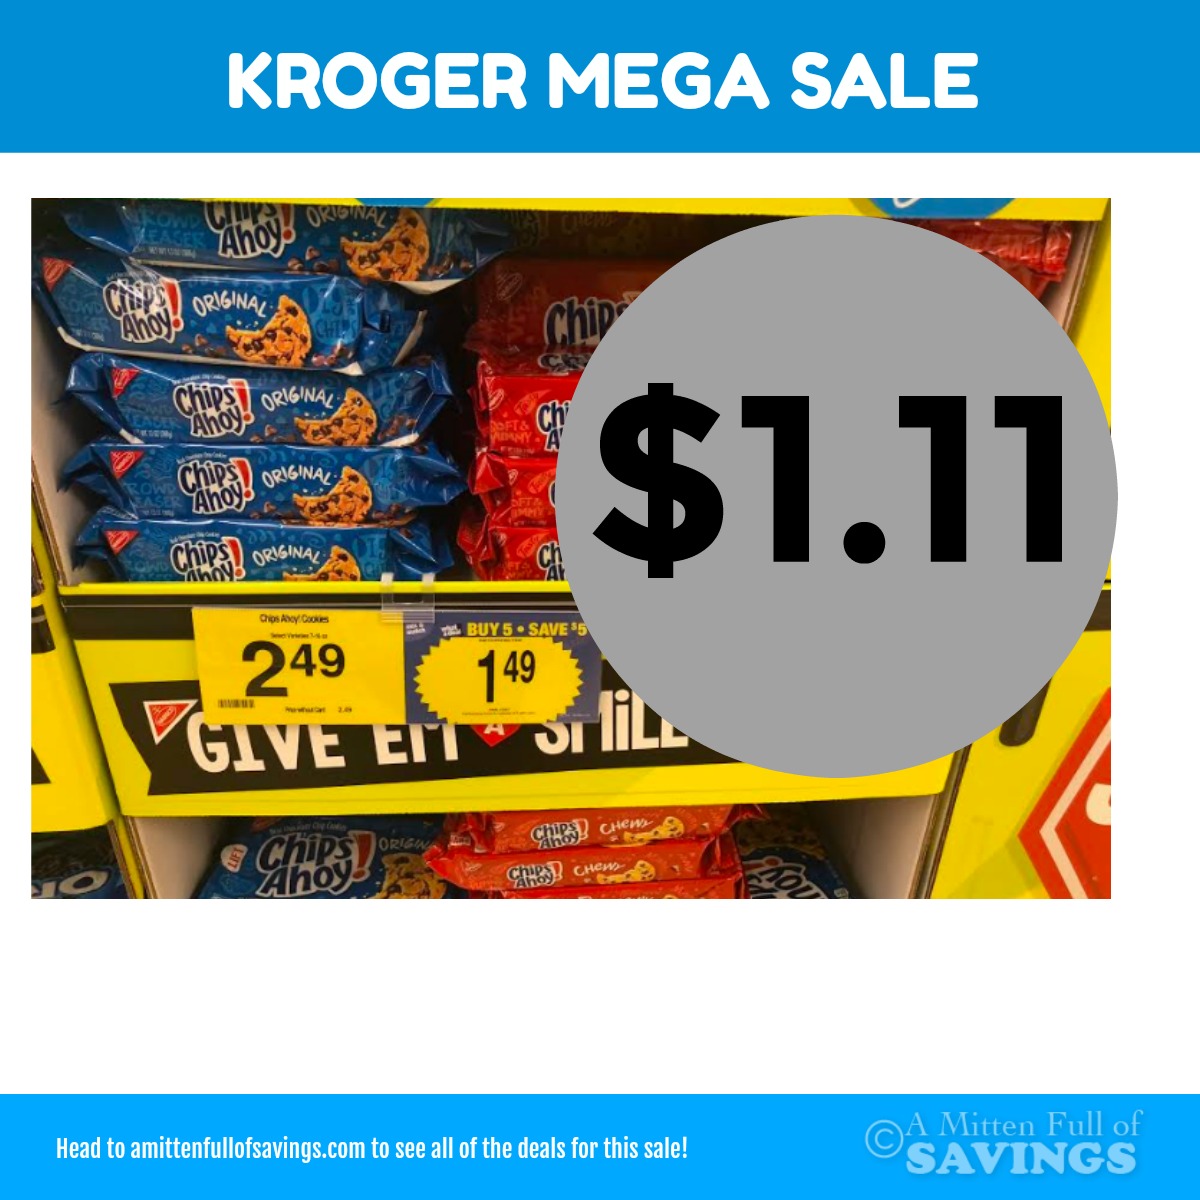 Kroger MEGA: Chips Ahoy! $1.11 Right Now!